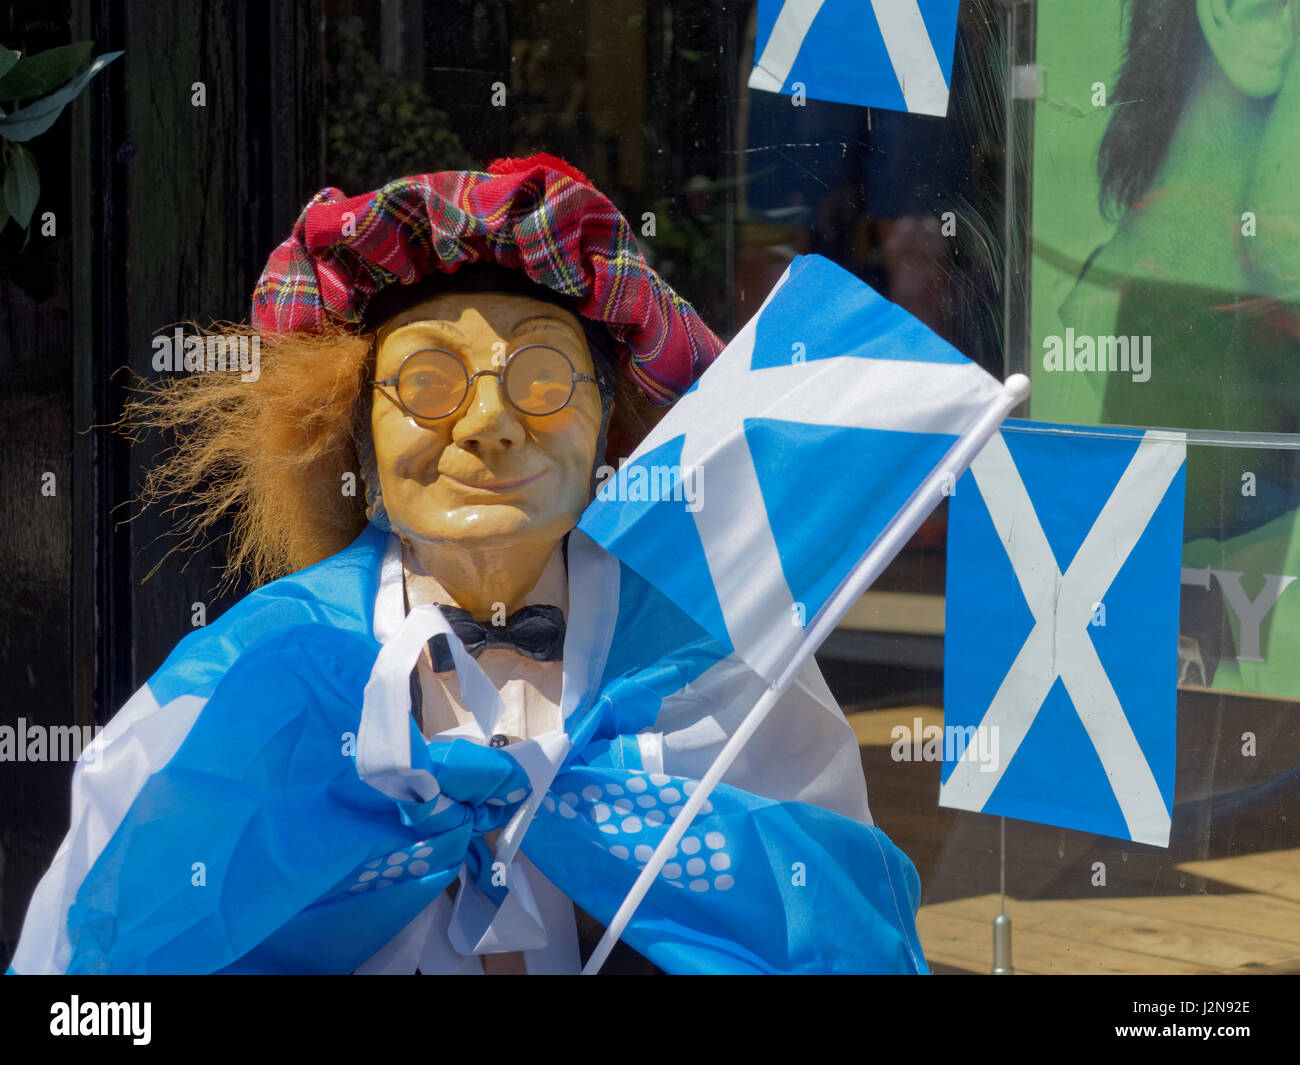 Parti National Écossais SNP oui brexit élection vote indépendance mannequin habillé en satire hat tartan St Andrews drapeaux et jimmy perruque Banque D'Images